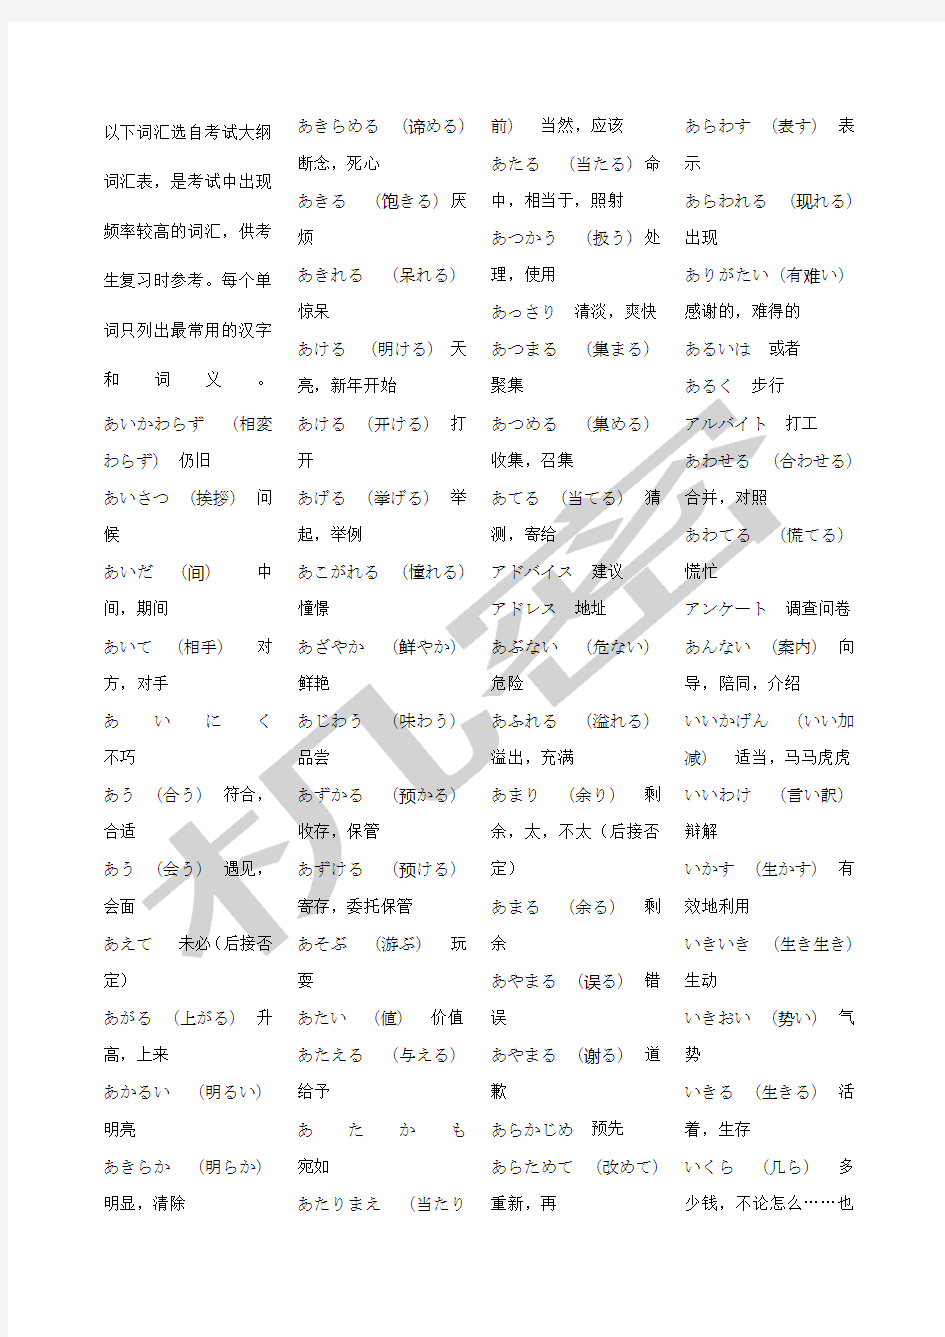 成人考试学士学位日语考试大纲词汇表